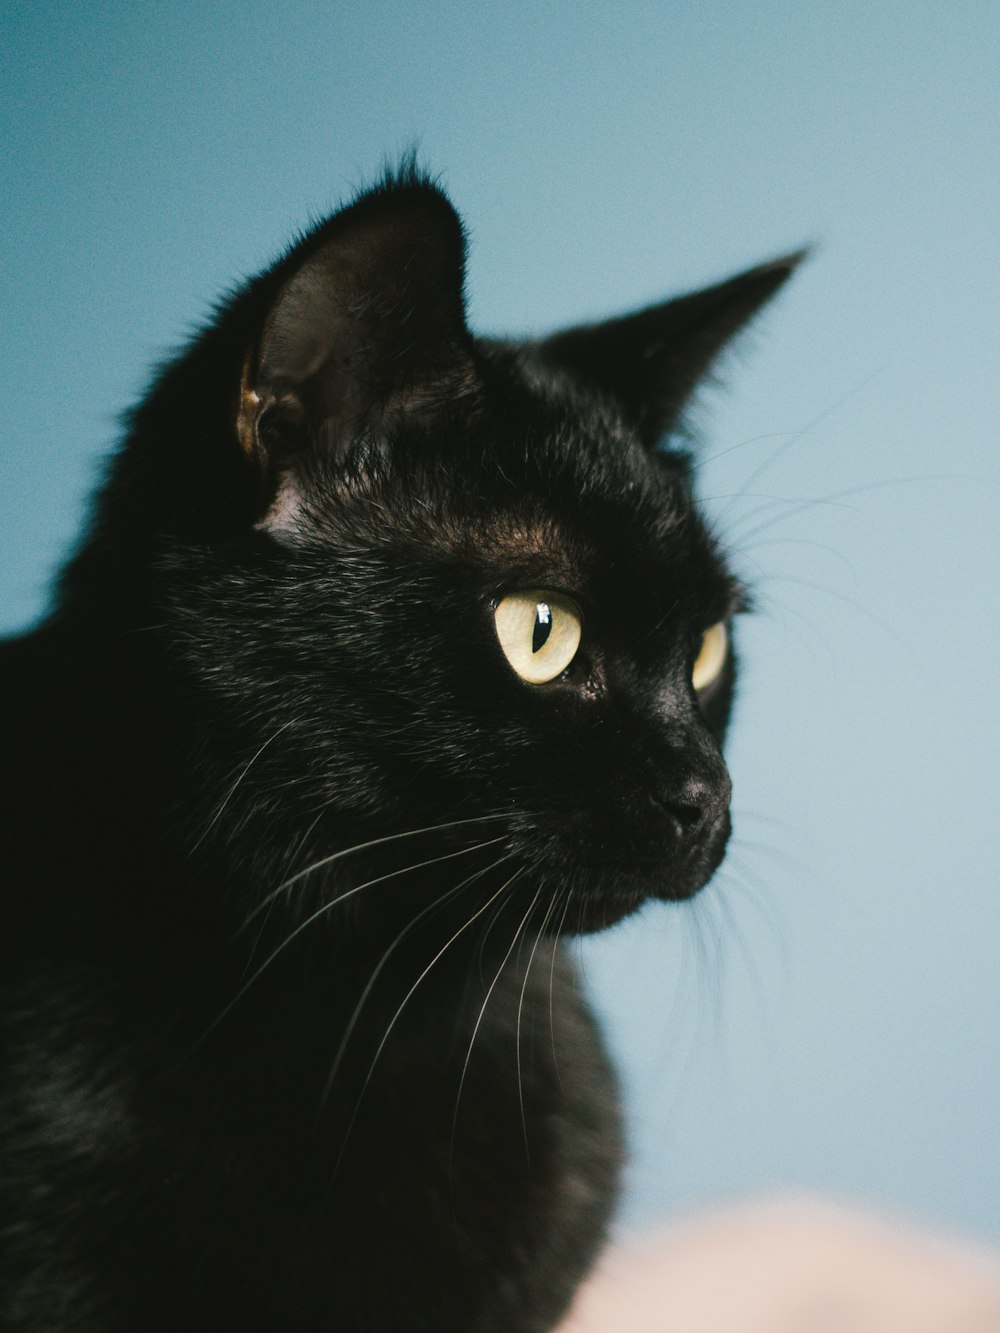 Más de 100 imágenes de gatos negros | Descargar imágenes gratis en Unsplash